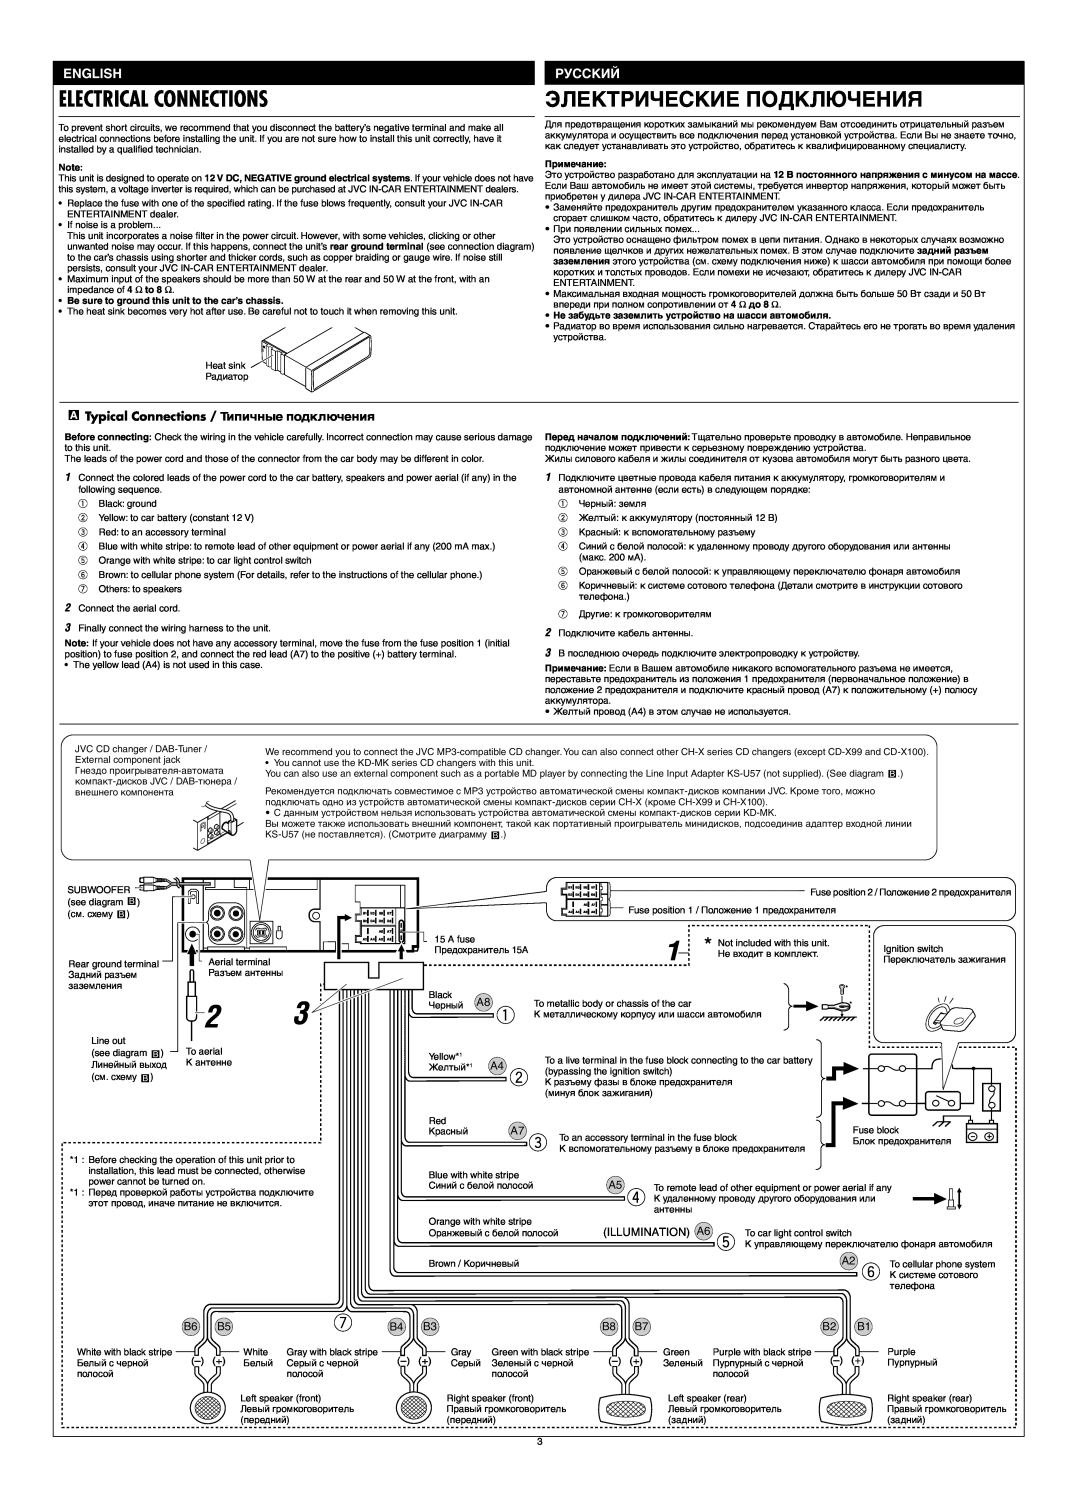 JVC GET0126-001A Electrical Connections, Электрические Подключения, Typical Connections / Типичные подключения, English 